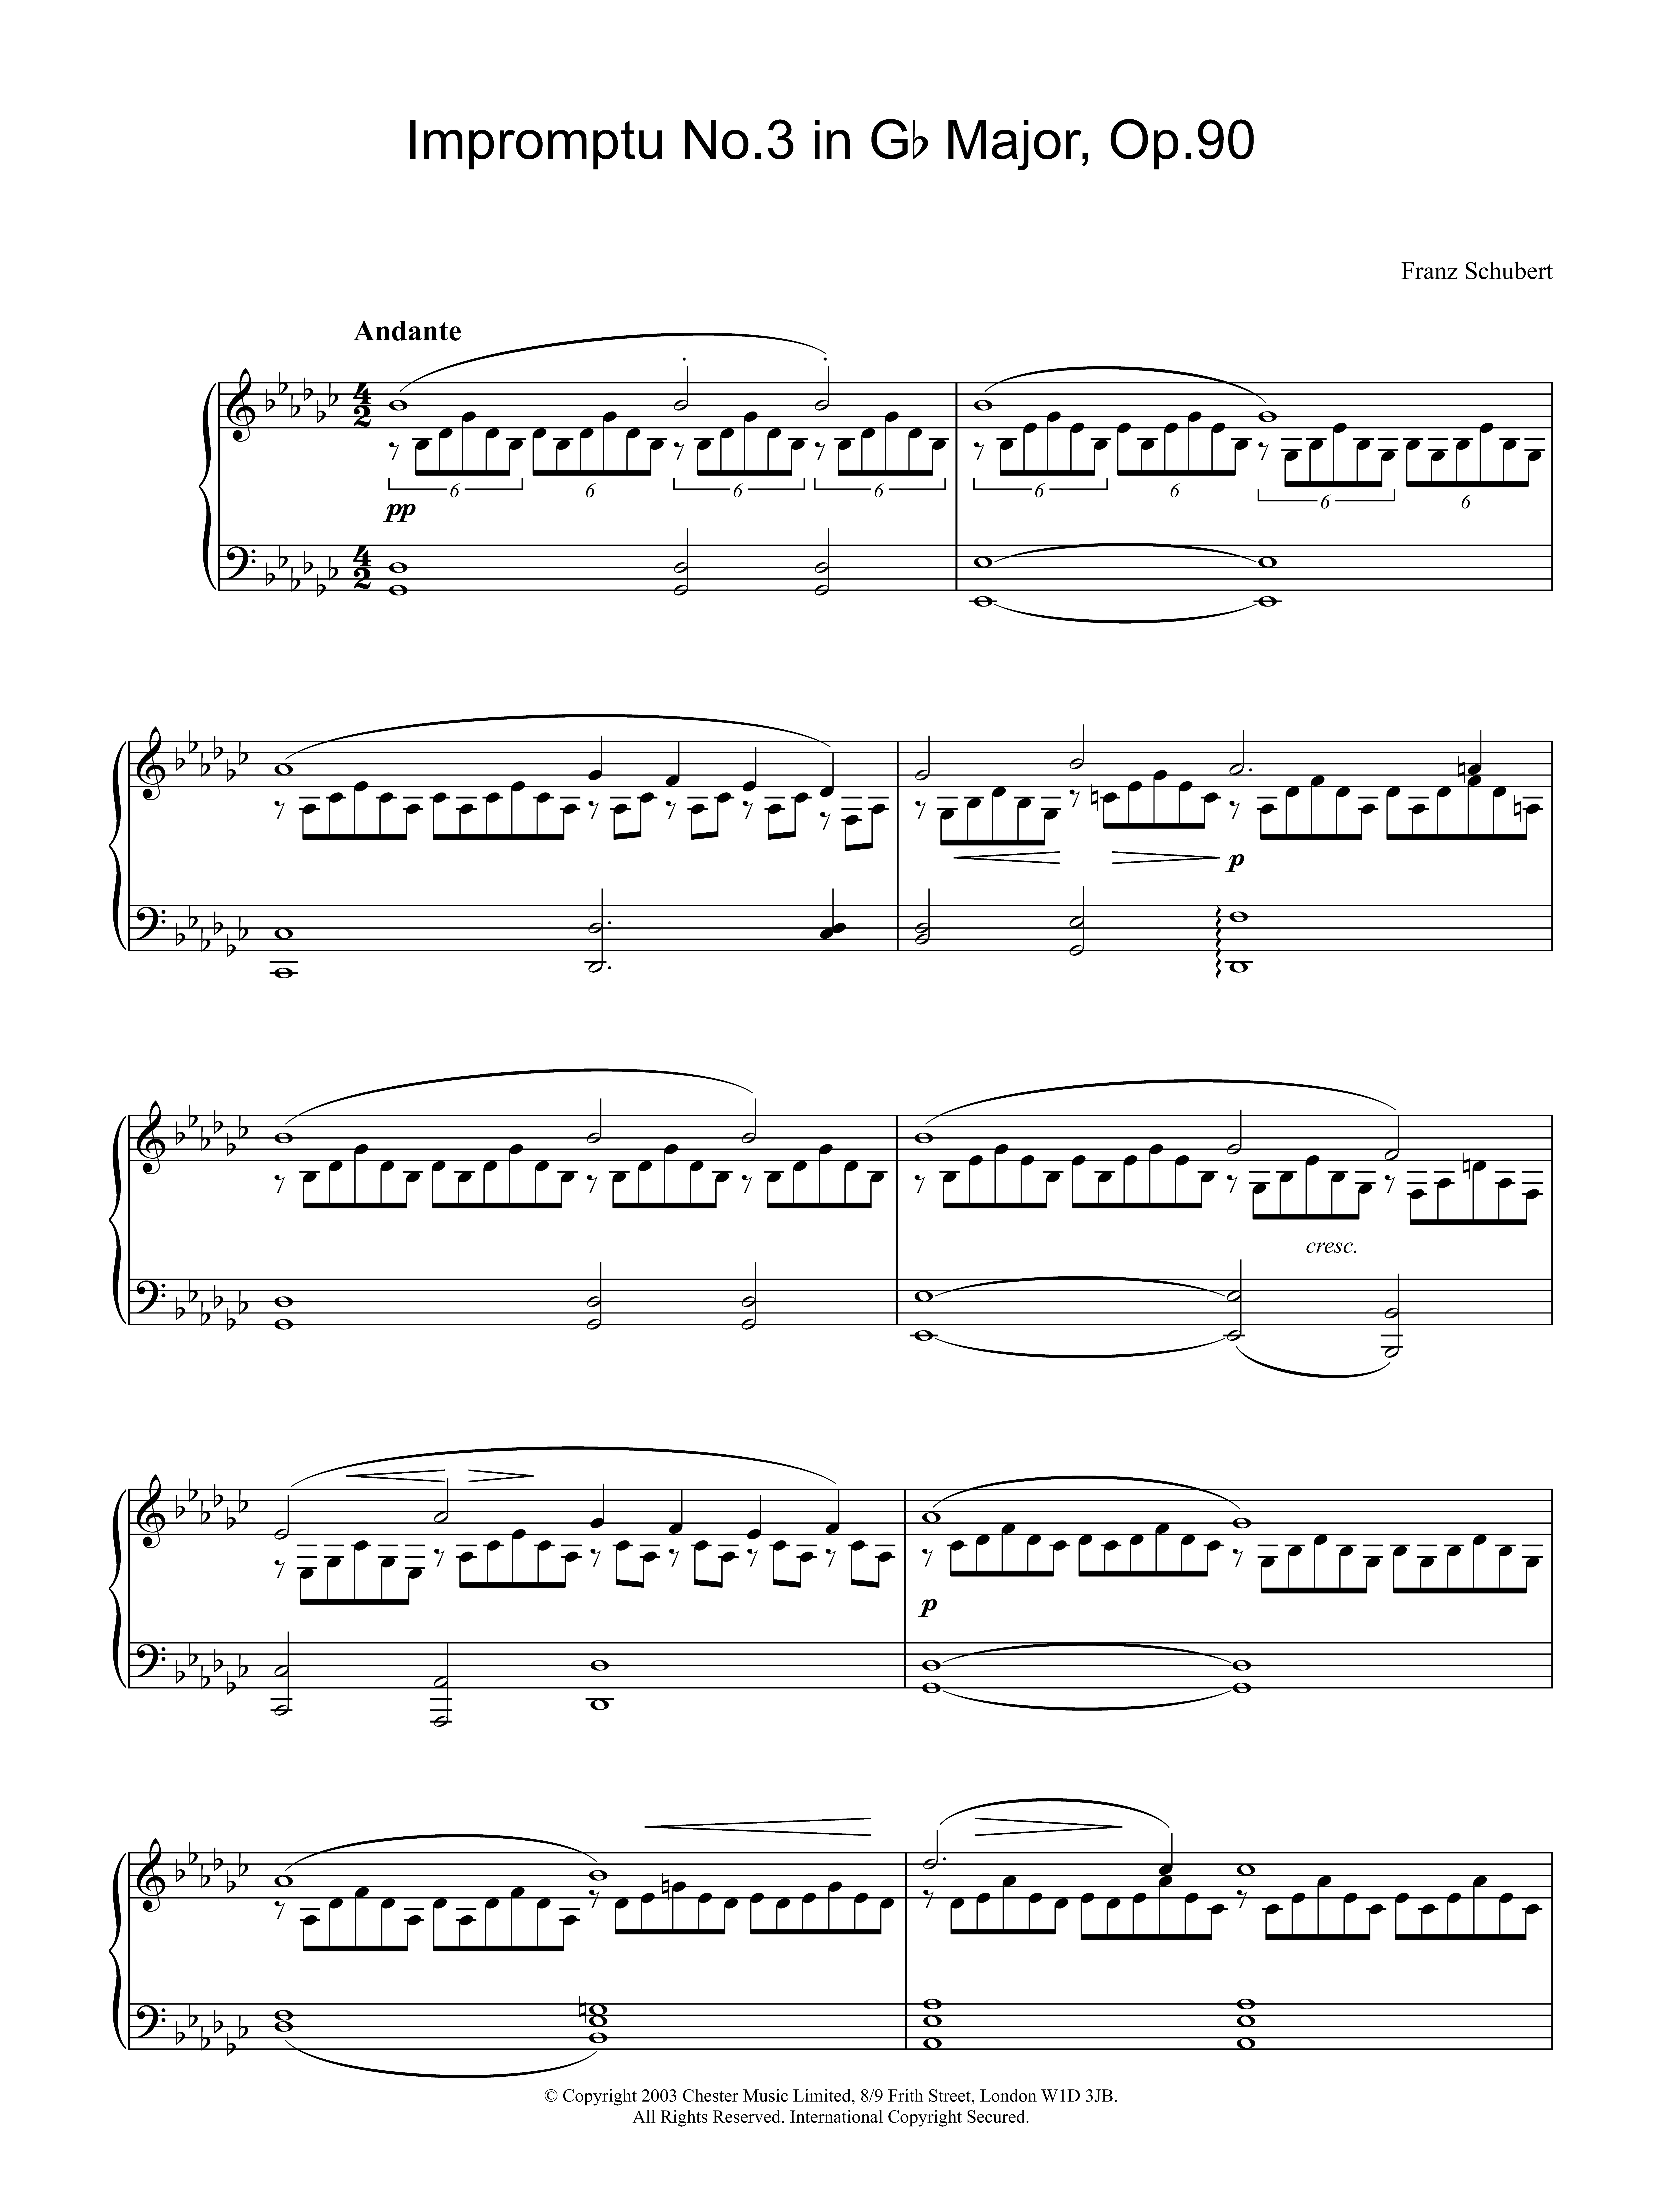 Download Franz Schubert Impromptu No. 3 in G Flat Major, Op.90 Sheet Music